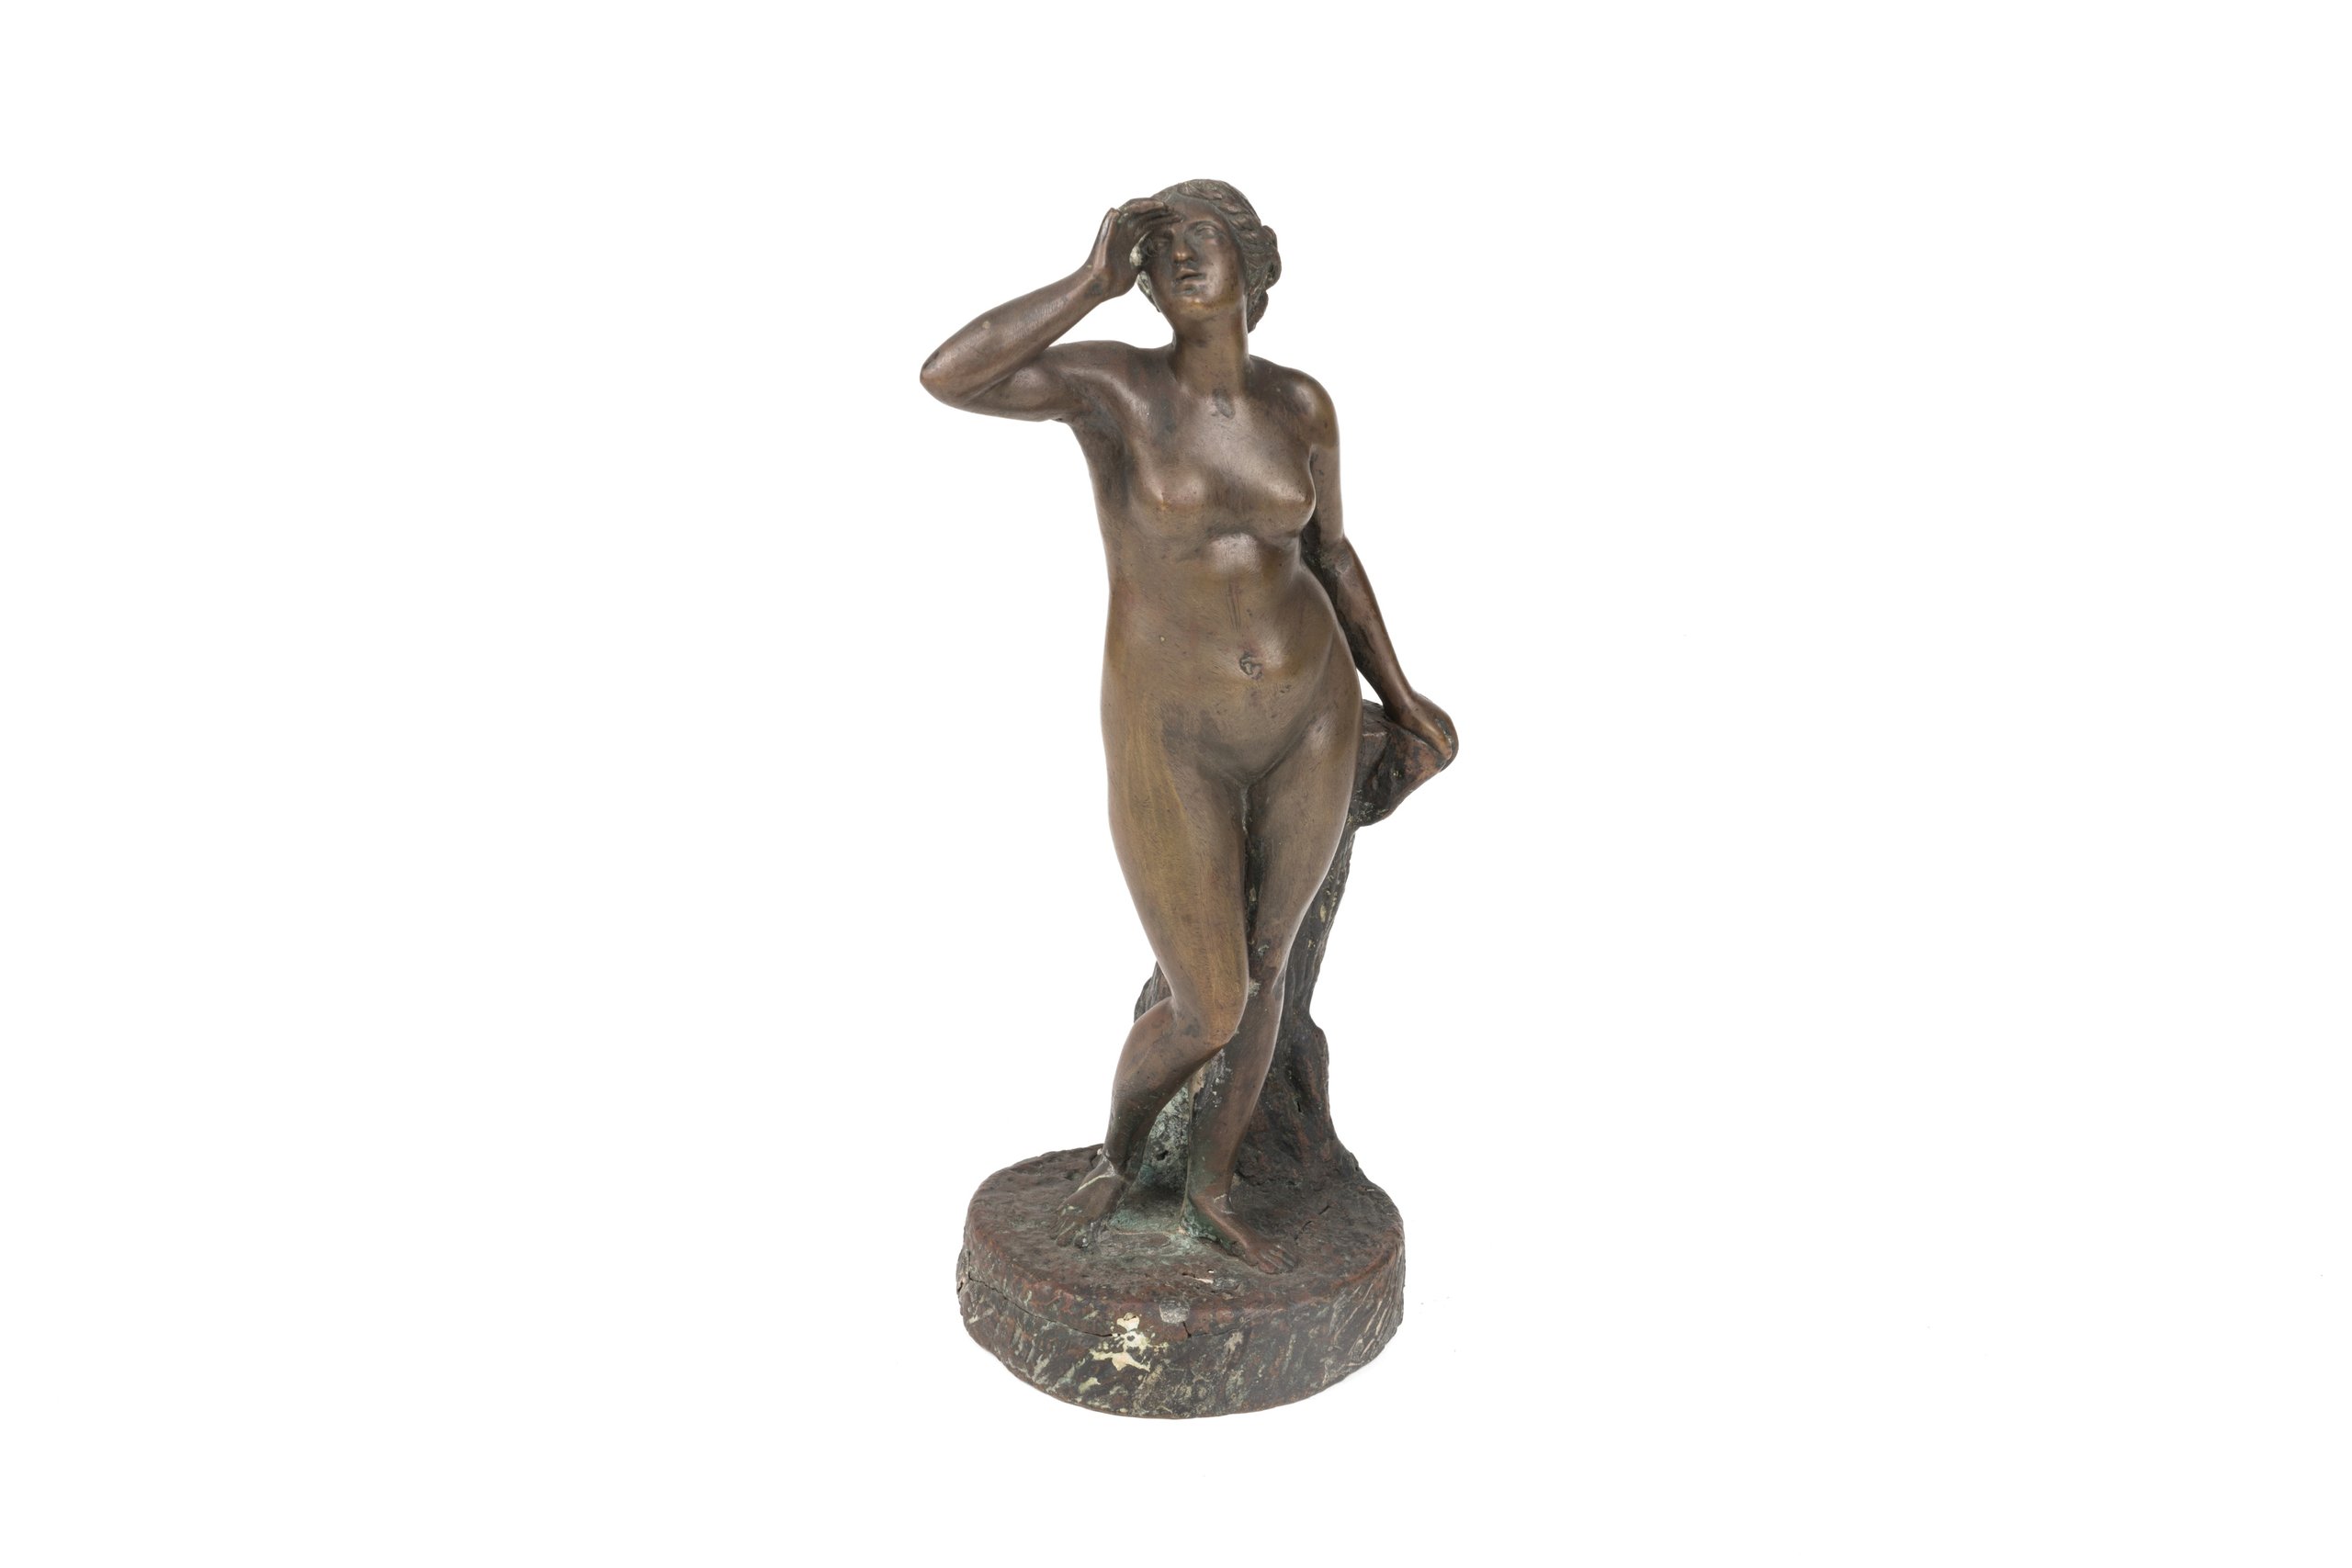 Bronze statuette made late 19th century